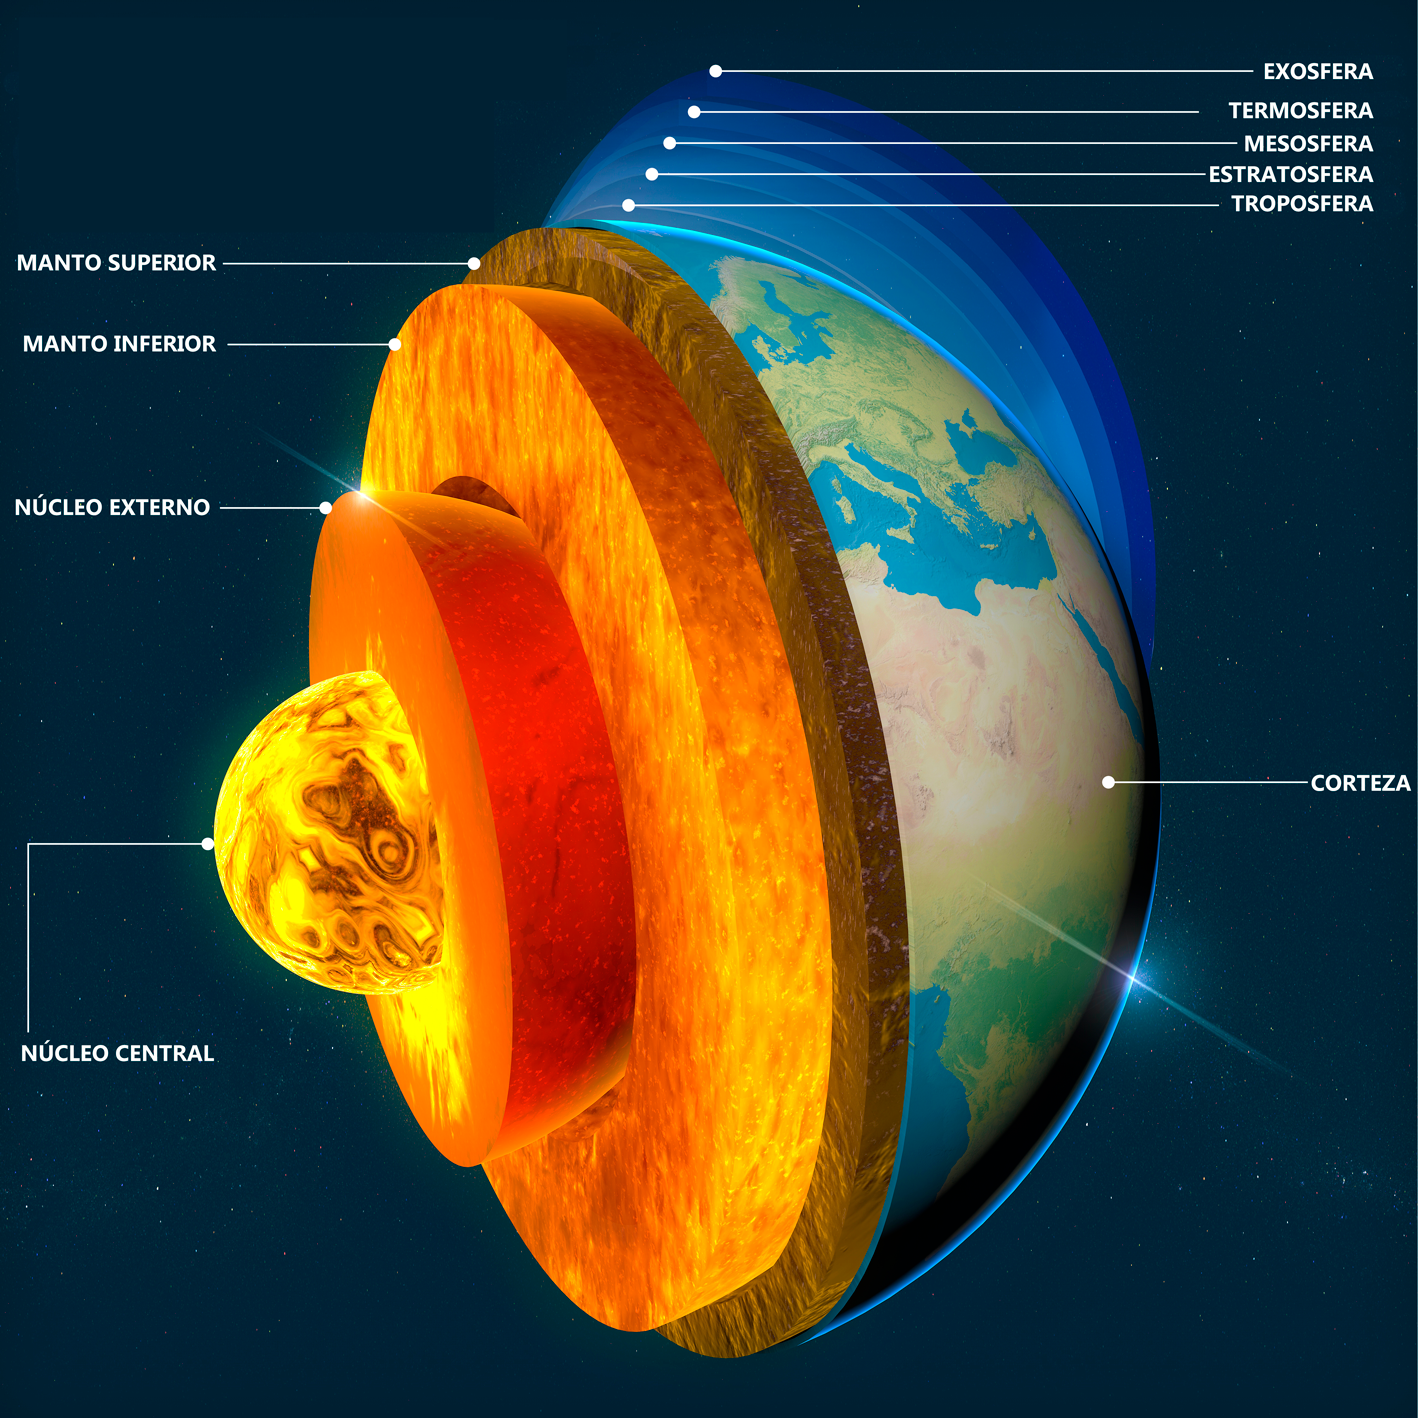 Capas de la Tierra que van de afuera hacia adentro en el siguiente orden: exósfera, termósfera, mesósfera, estratósfera, tropósfera, corteza, manto superior, manto inferior, núcleo externo y núcleo interno